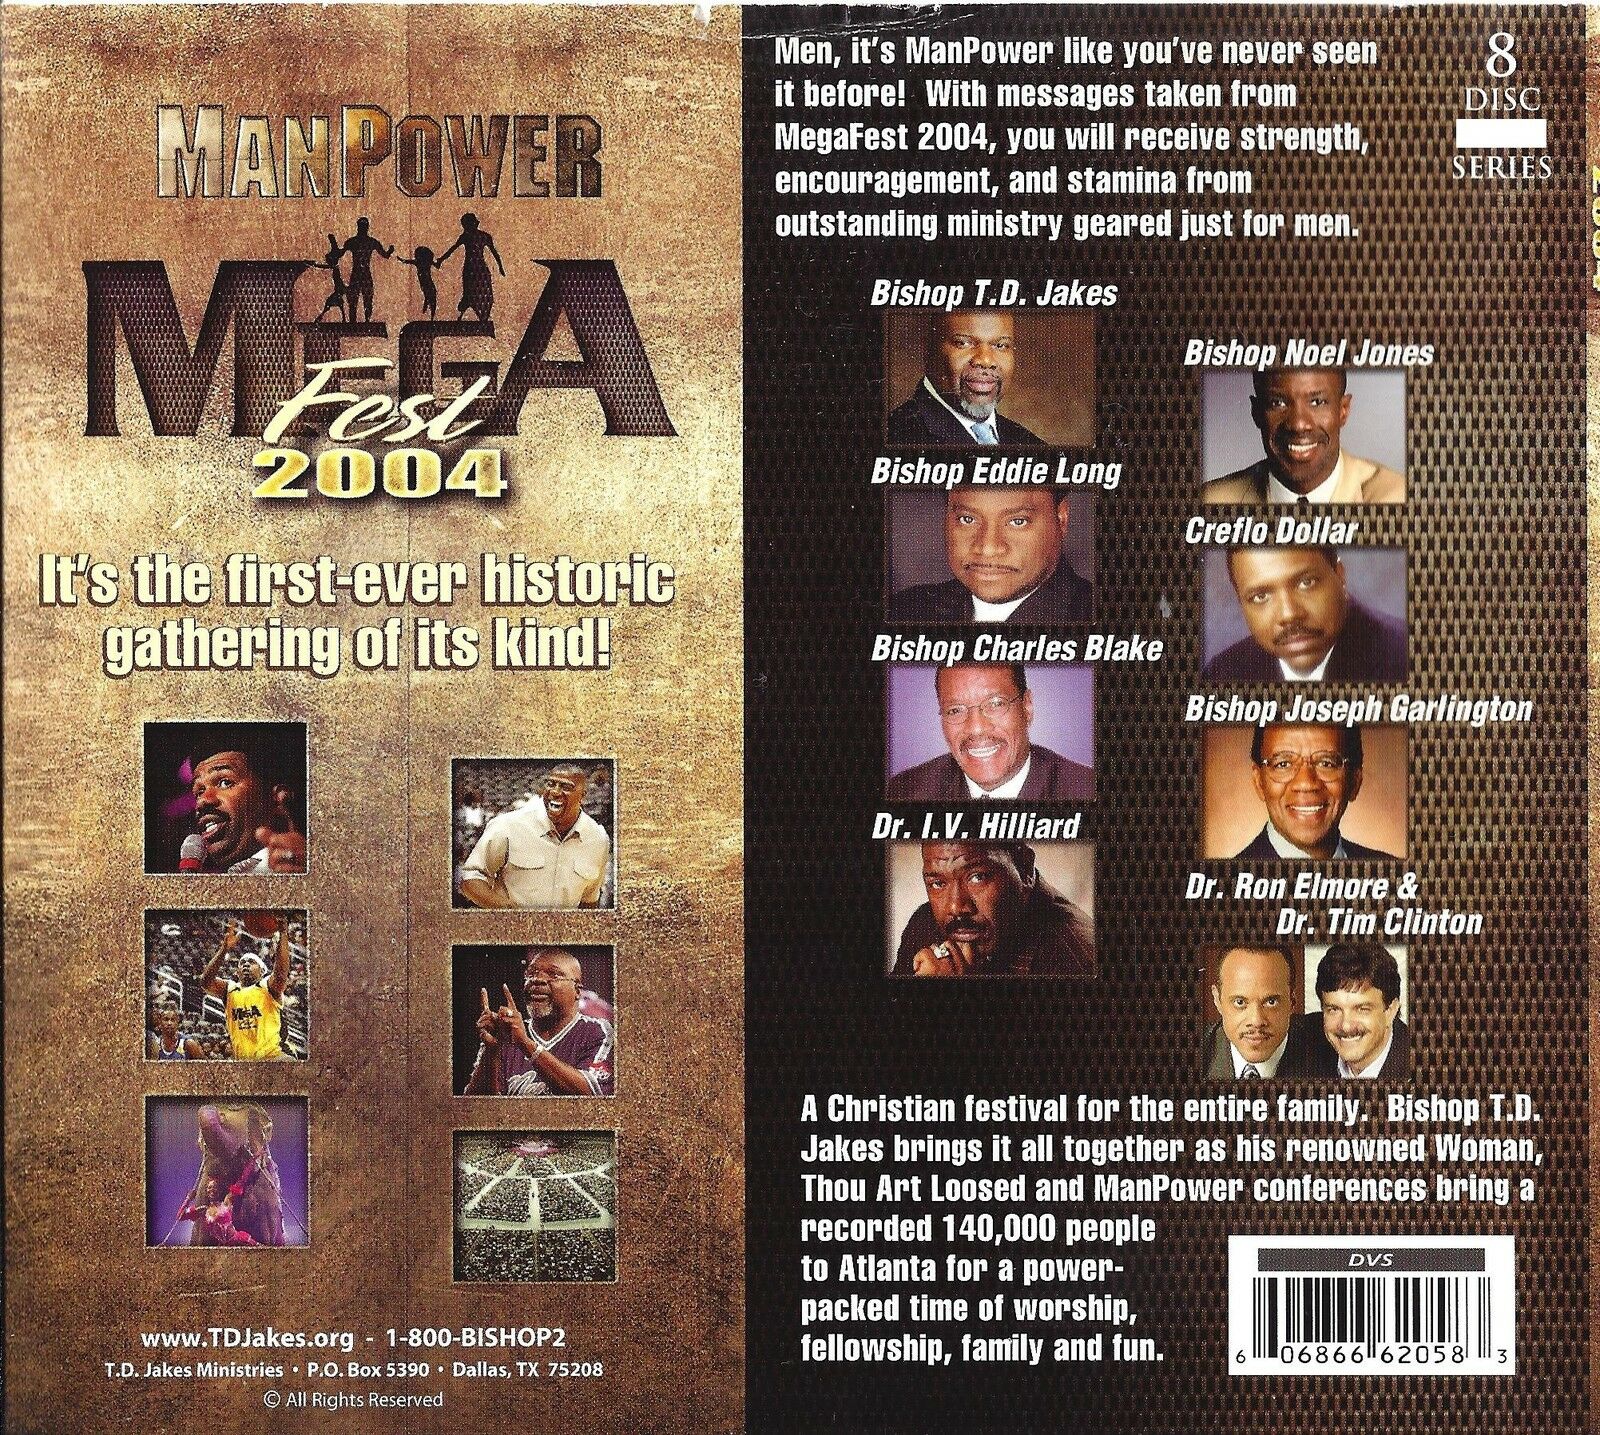 Manpower 2004 (8 DVD) - T D Jakes